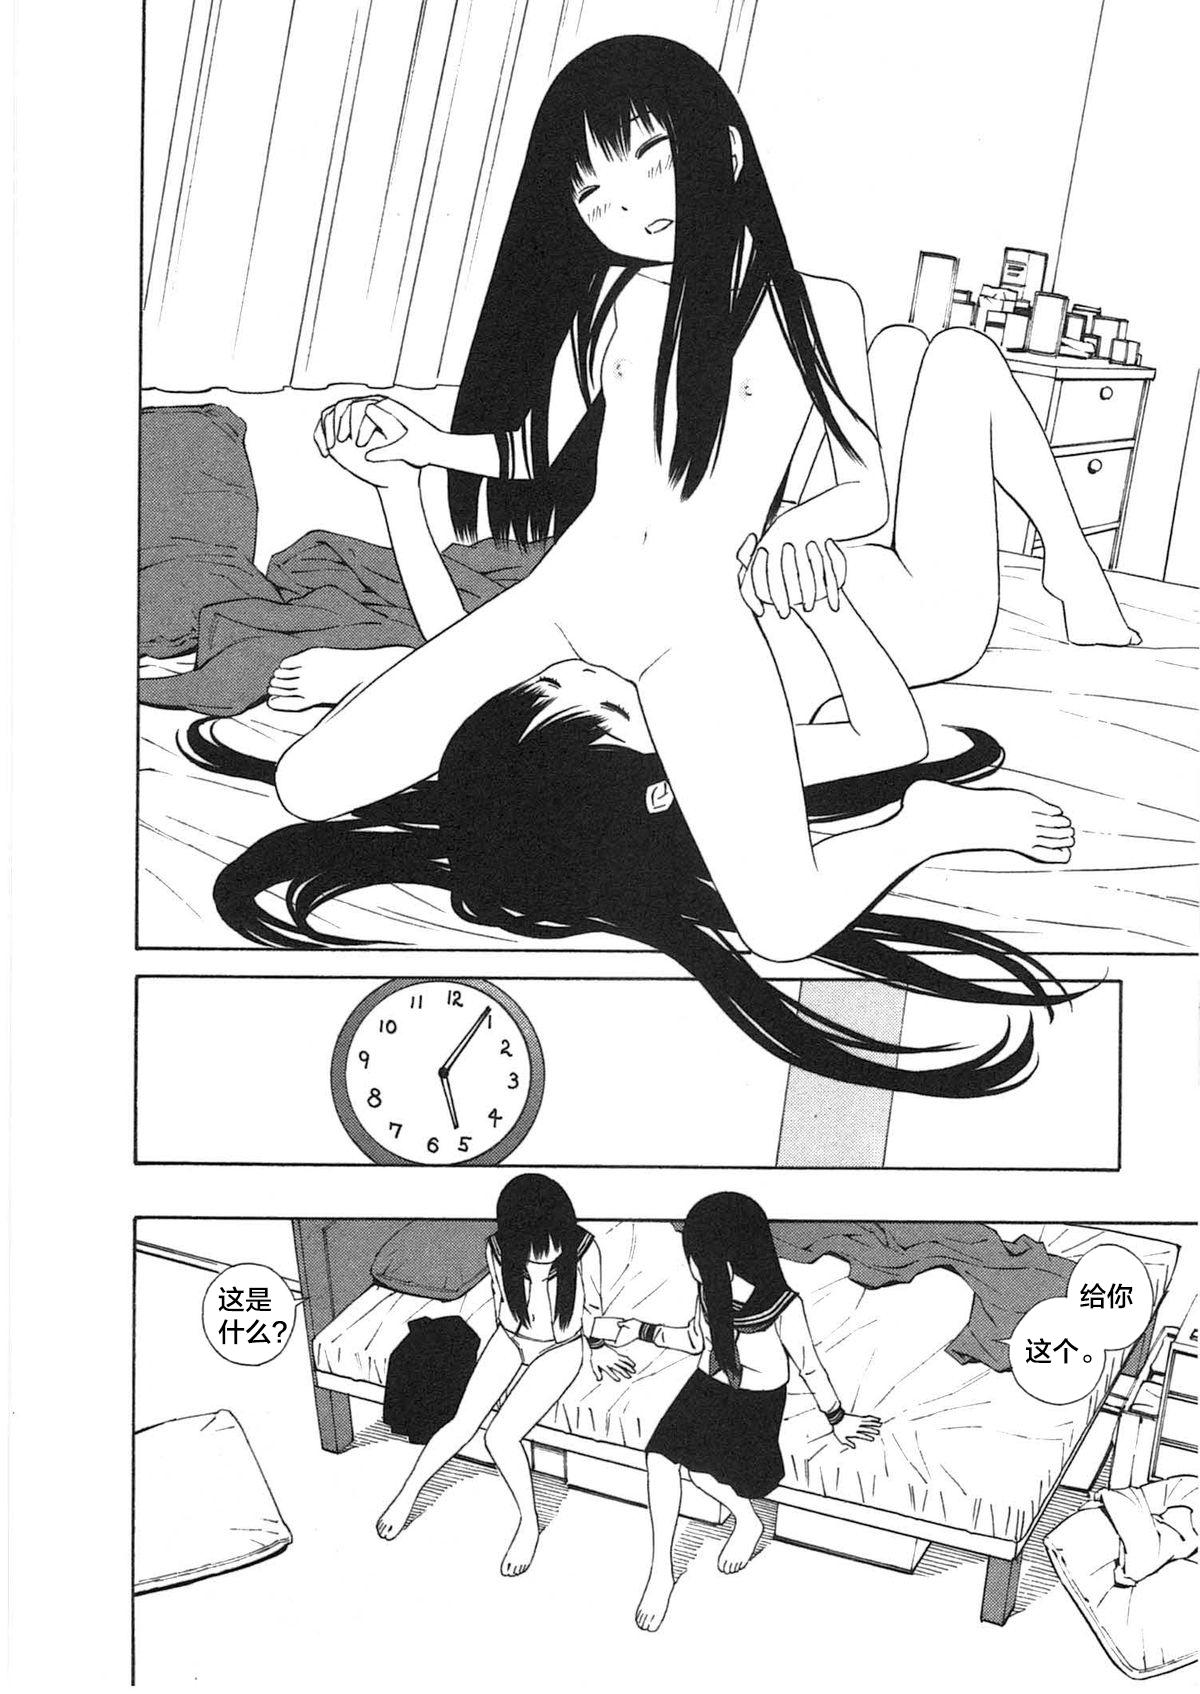 18 Year Old Ashita no Atashi Spooning - Page 8